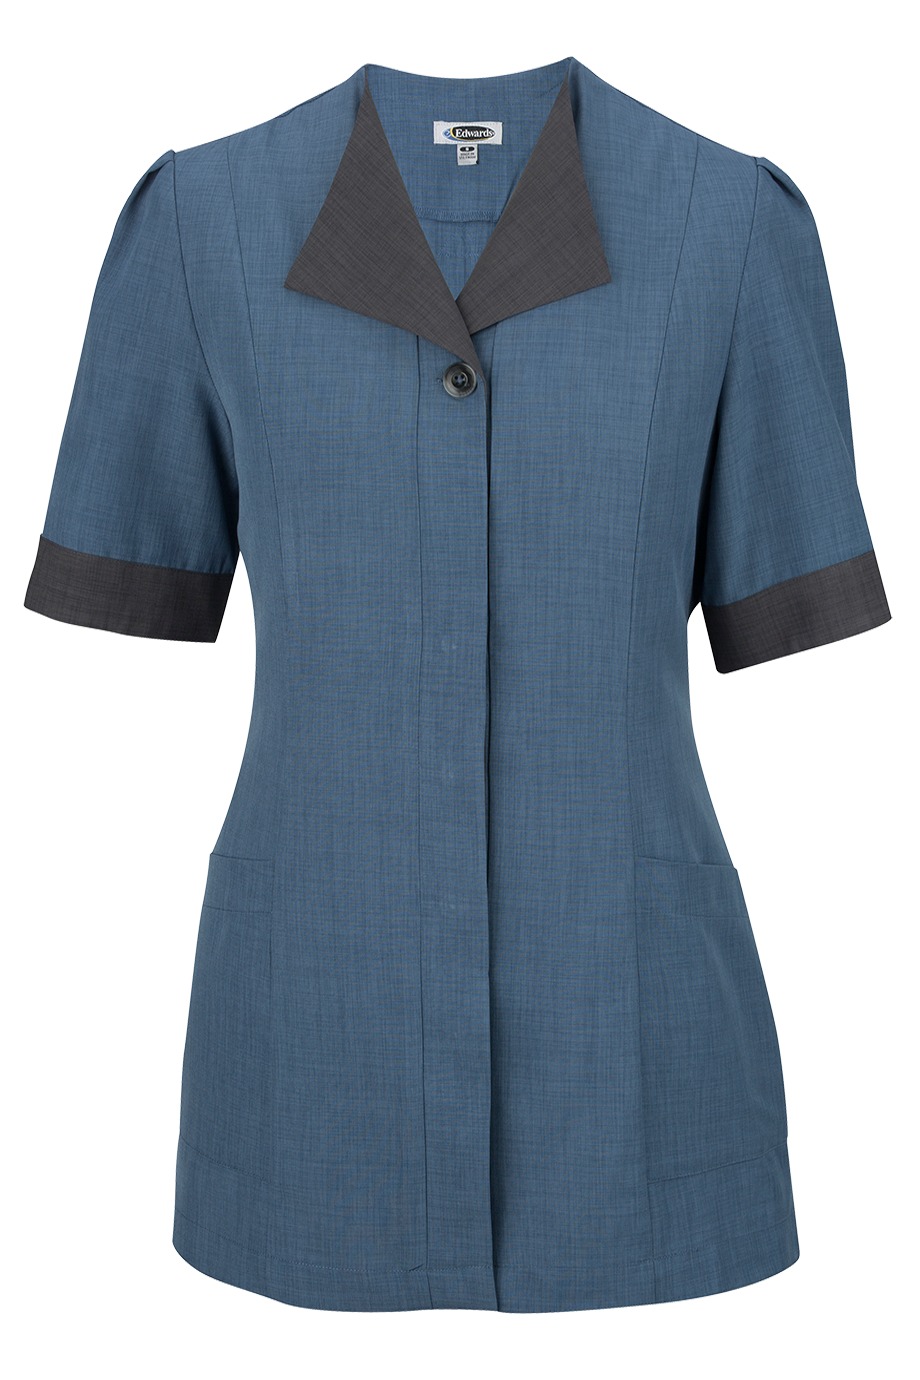 Edwards Garment 7280 - Pinnacle Housekeeping Tunic